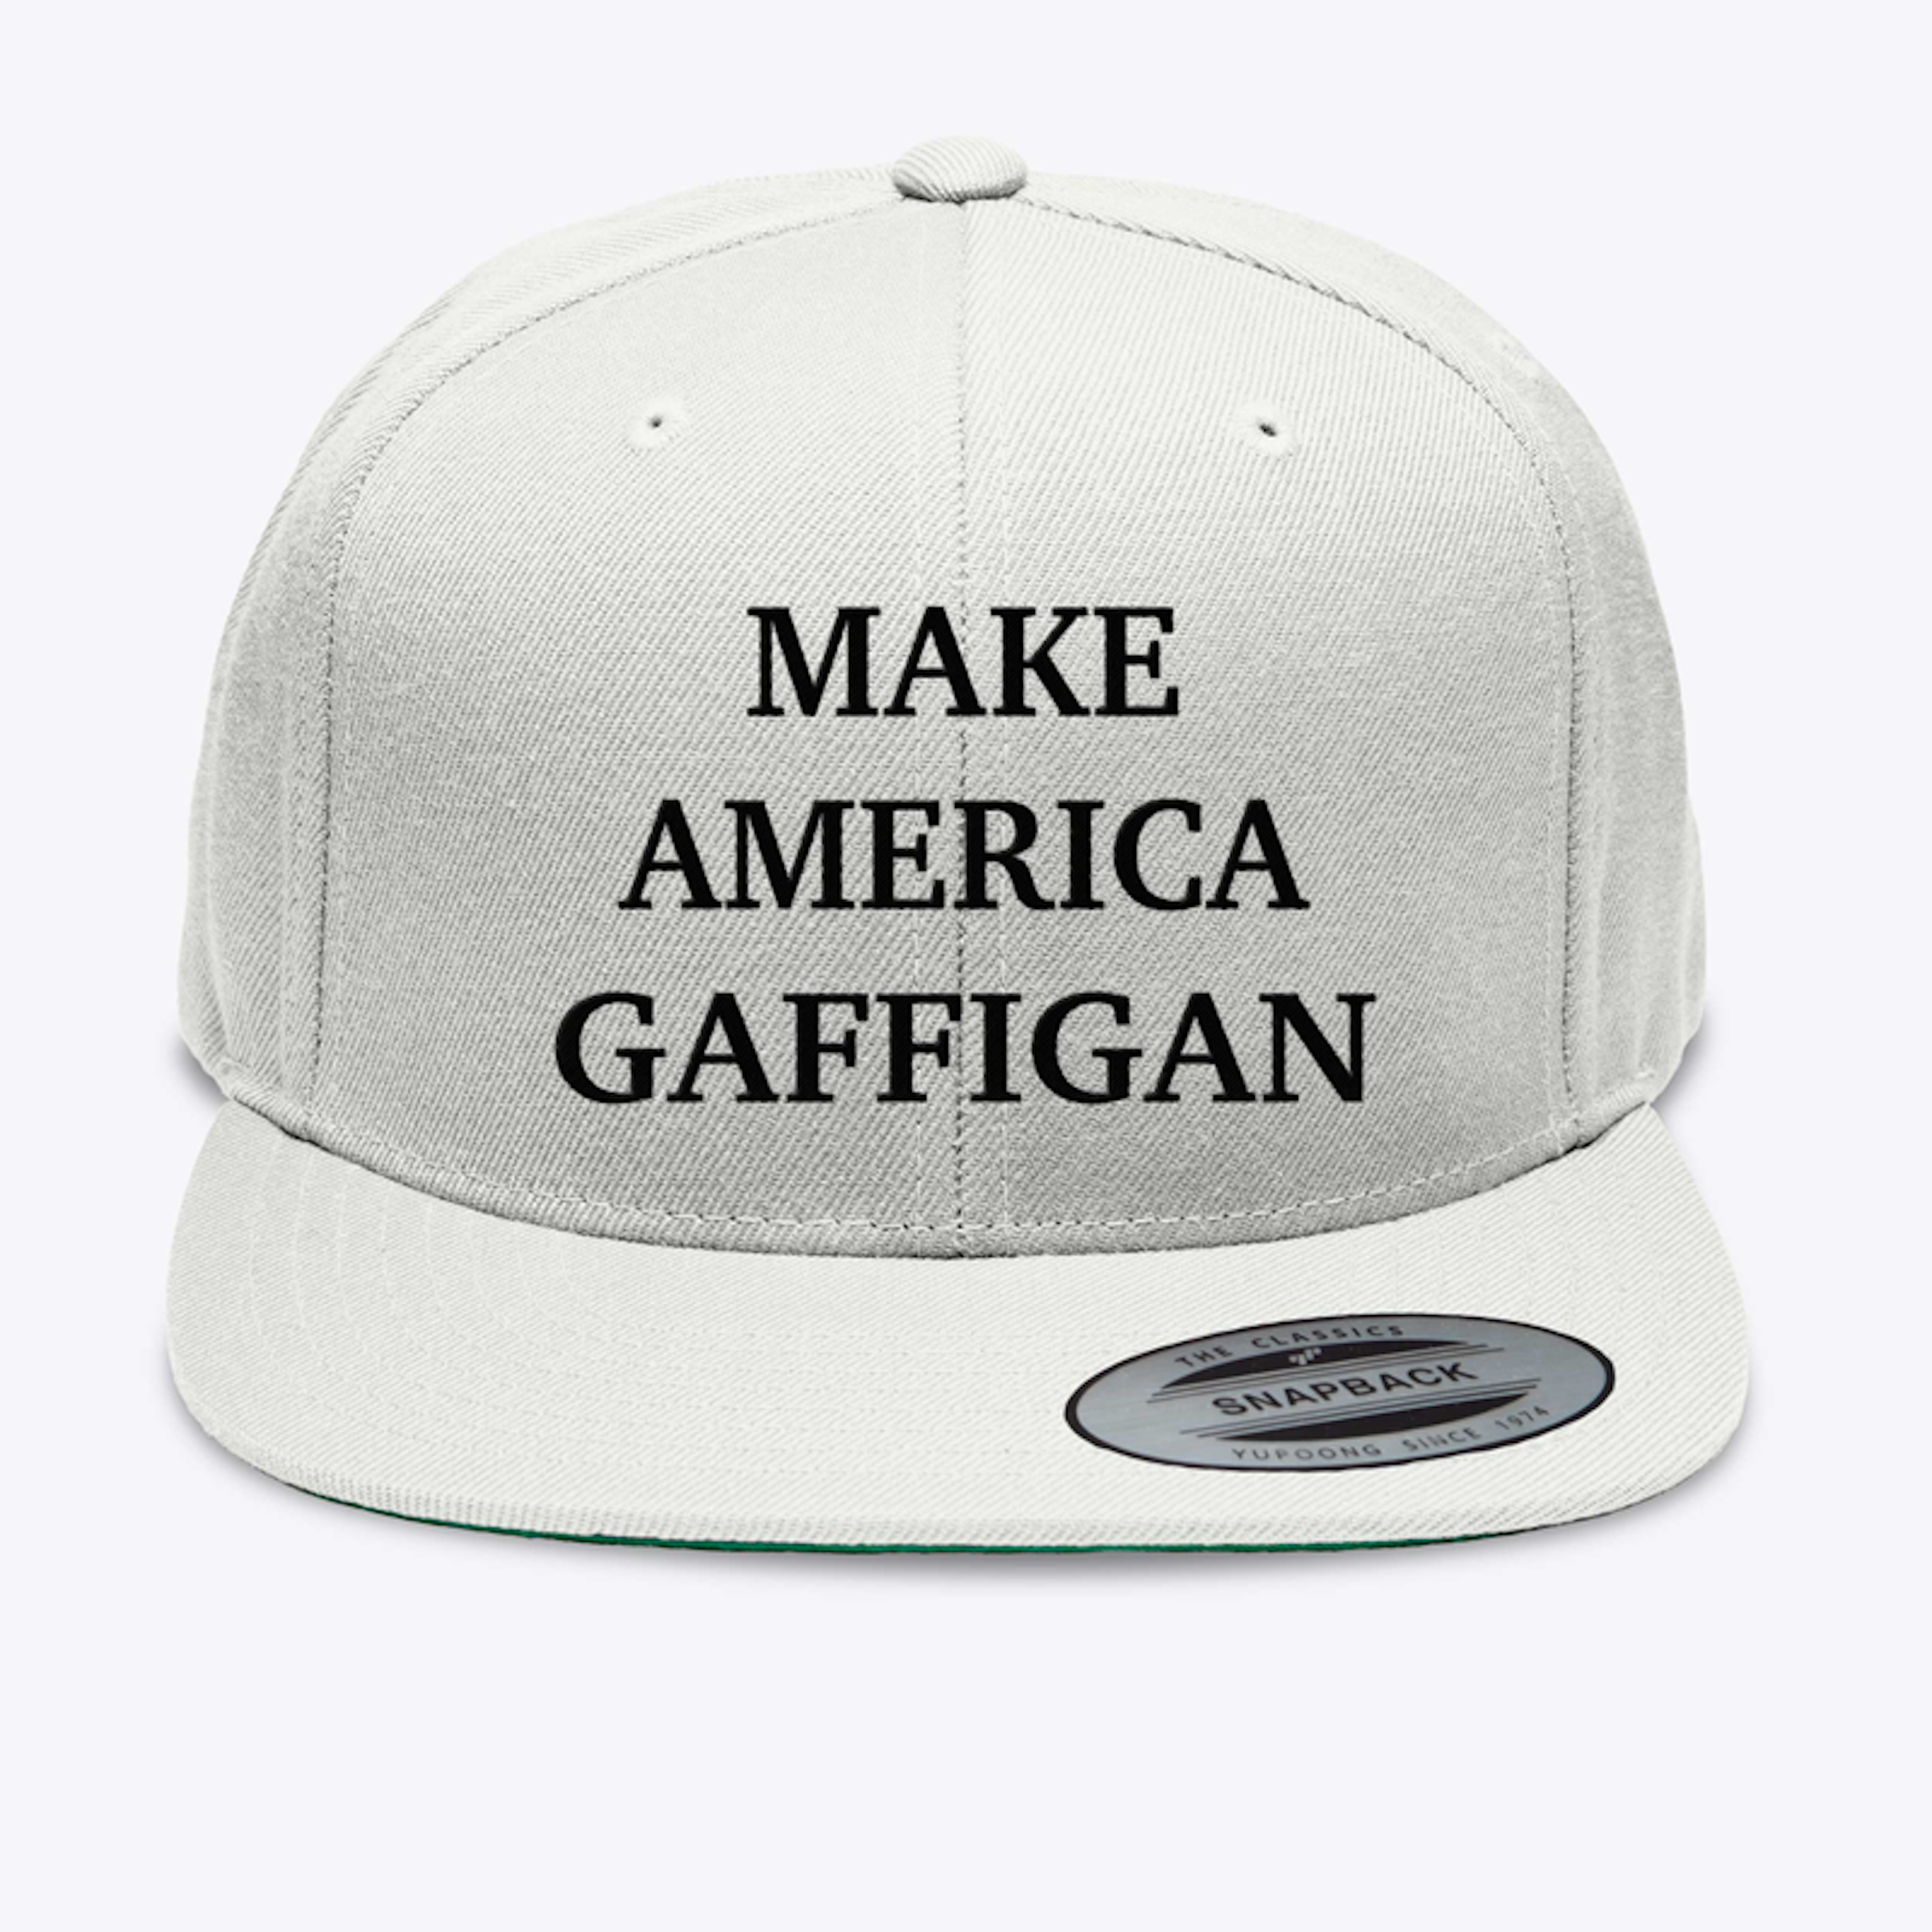 Make America Gaffigan